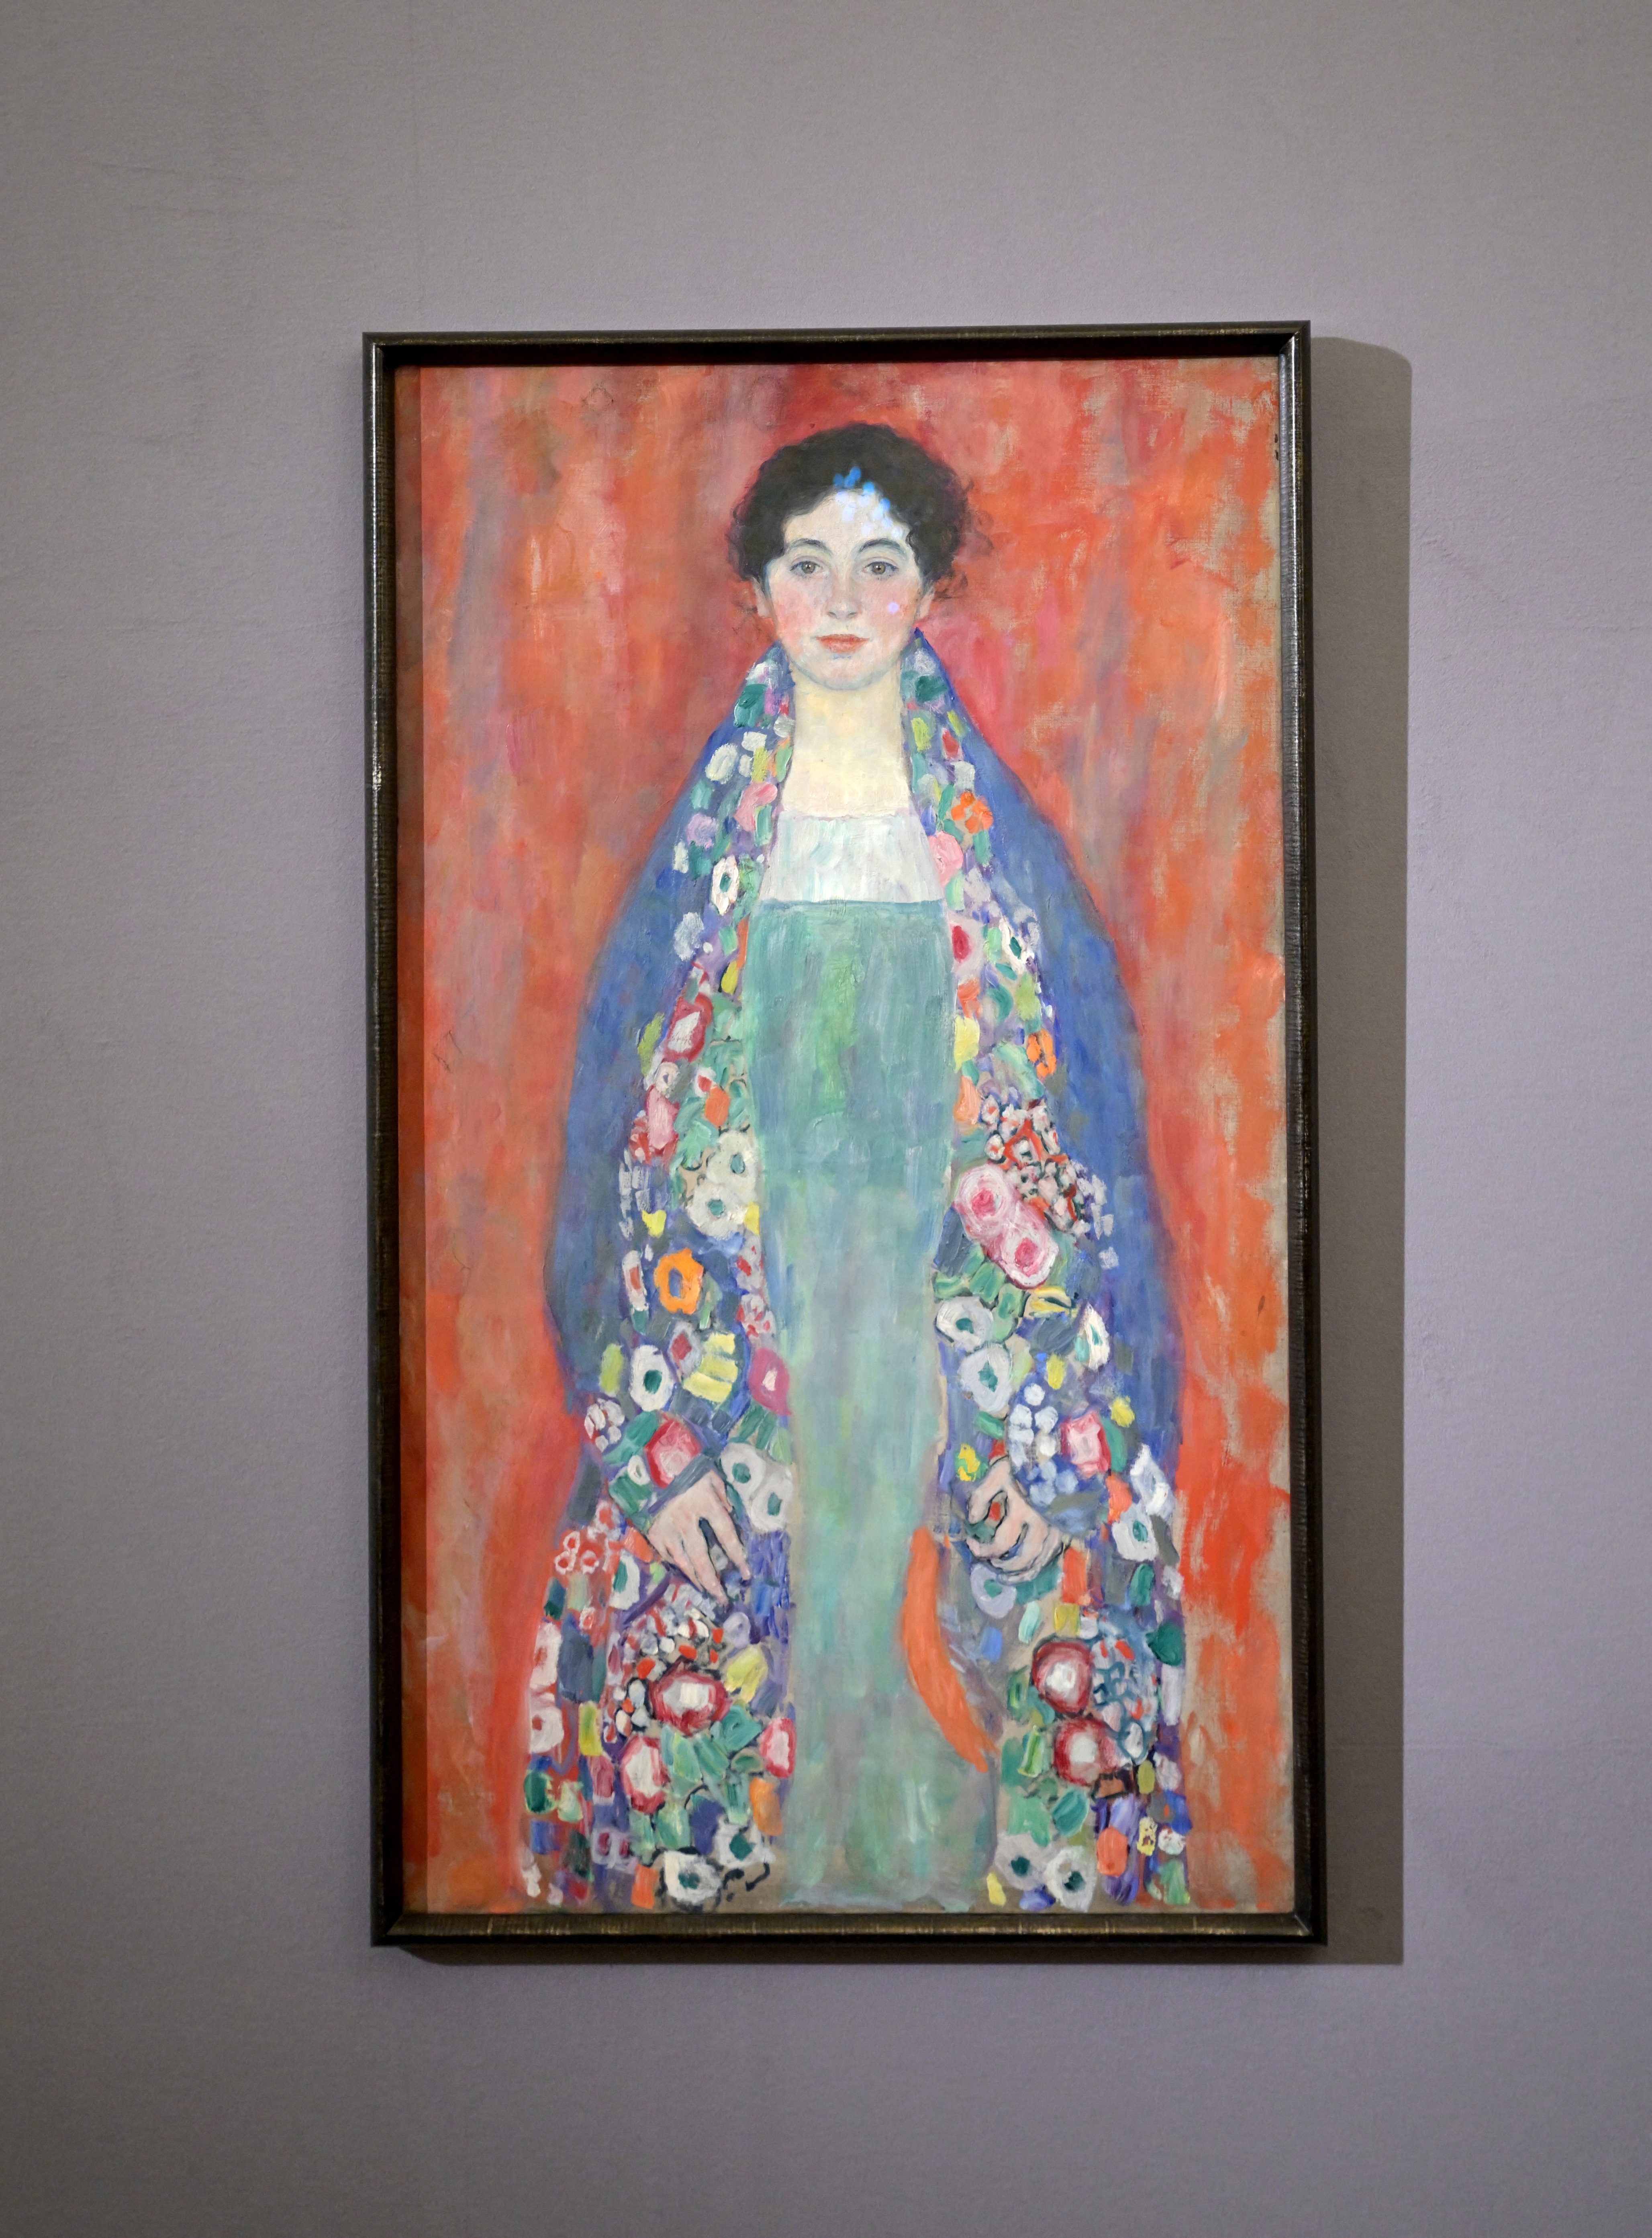 Árverésen keres új gazdát egy száz évre eltűnt Klimt-festmény